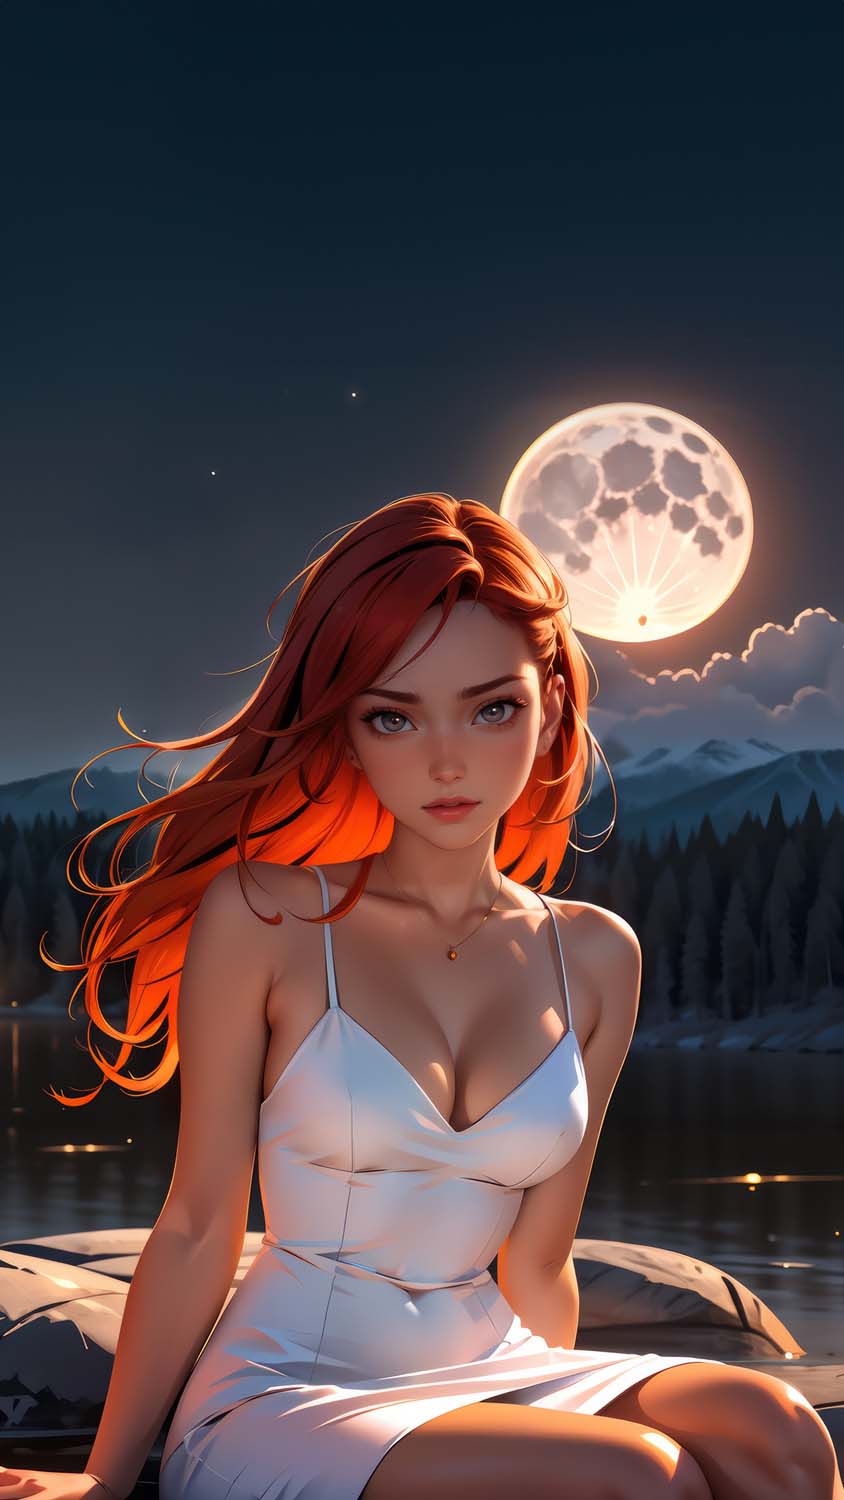 Moon Night white dress anime girl iPhone Wallpaper 4K